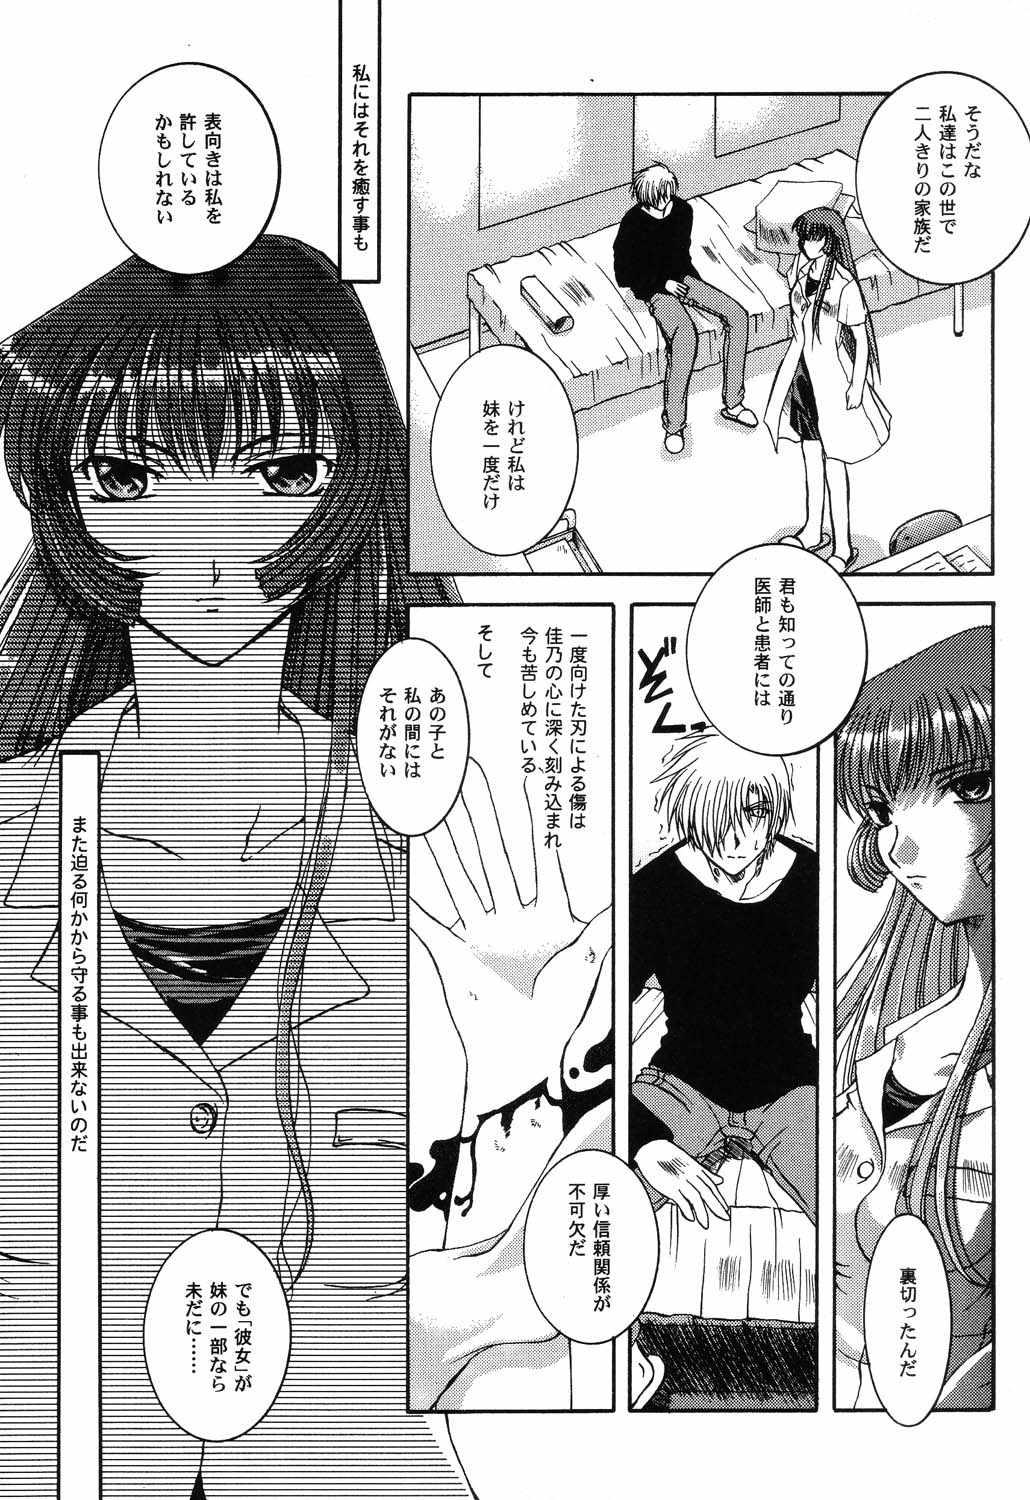 Enema Himitsu no Serenade 3 - Kanon Air Lezdom - Page 10